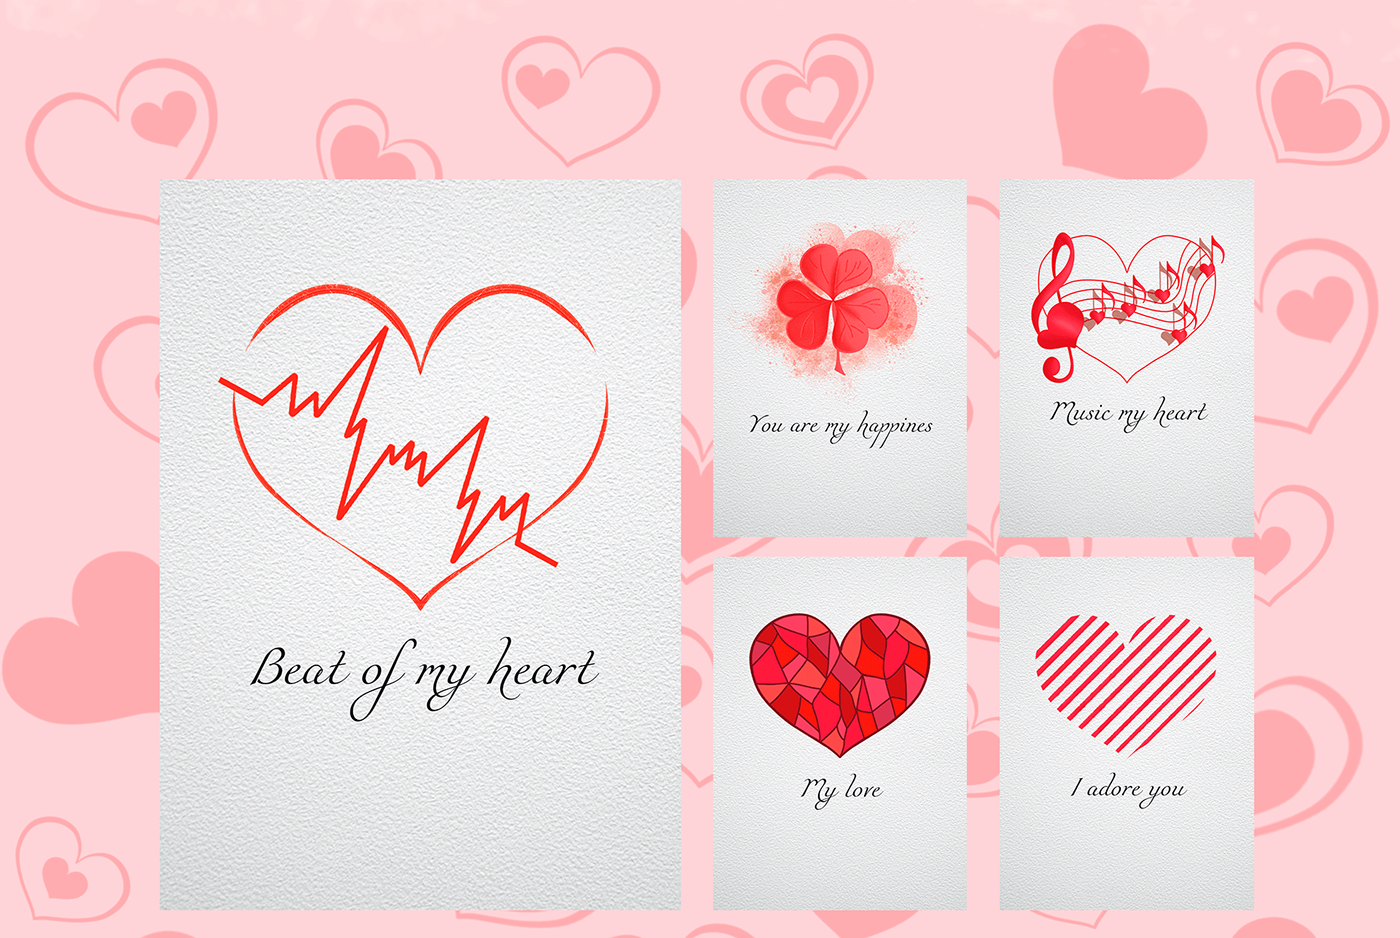 love stickers merch design postcards St Valentine's Day Valentine's Day ДеньСвятогоВалентина card design cards hearts logo